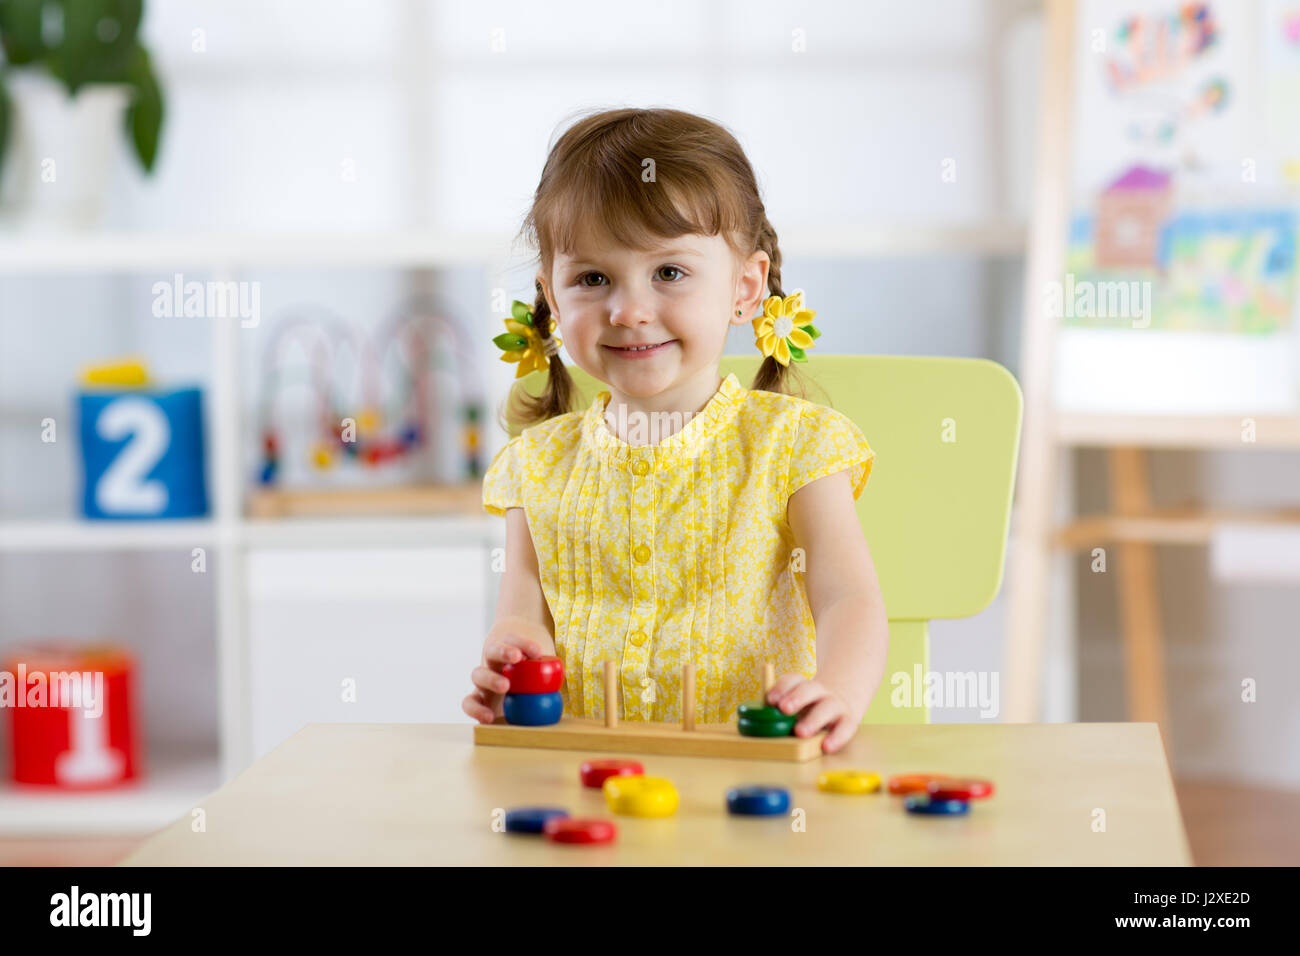 Kid ragazza che gioca con il giocattolo logico sulla scrivania in nursery room o asilo nido. Disponendo del bambino e lo smistamento di colori e dimensioni Foto Stock